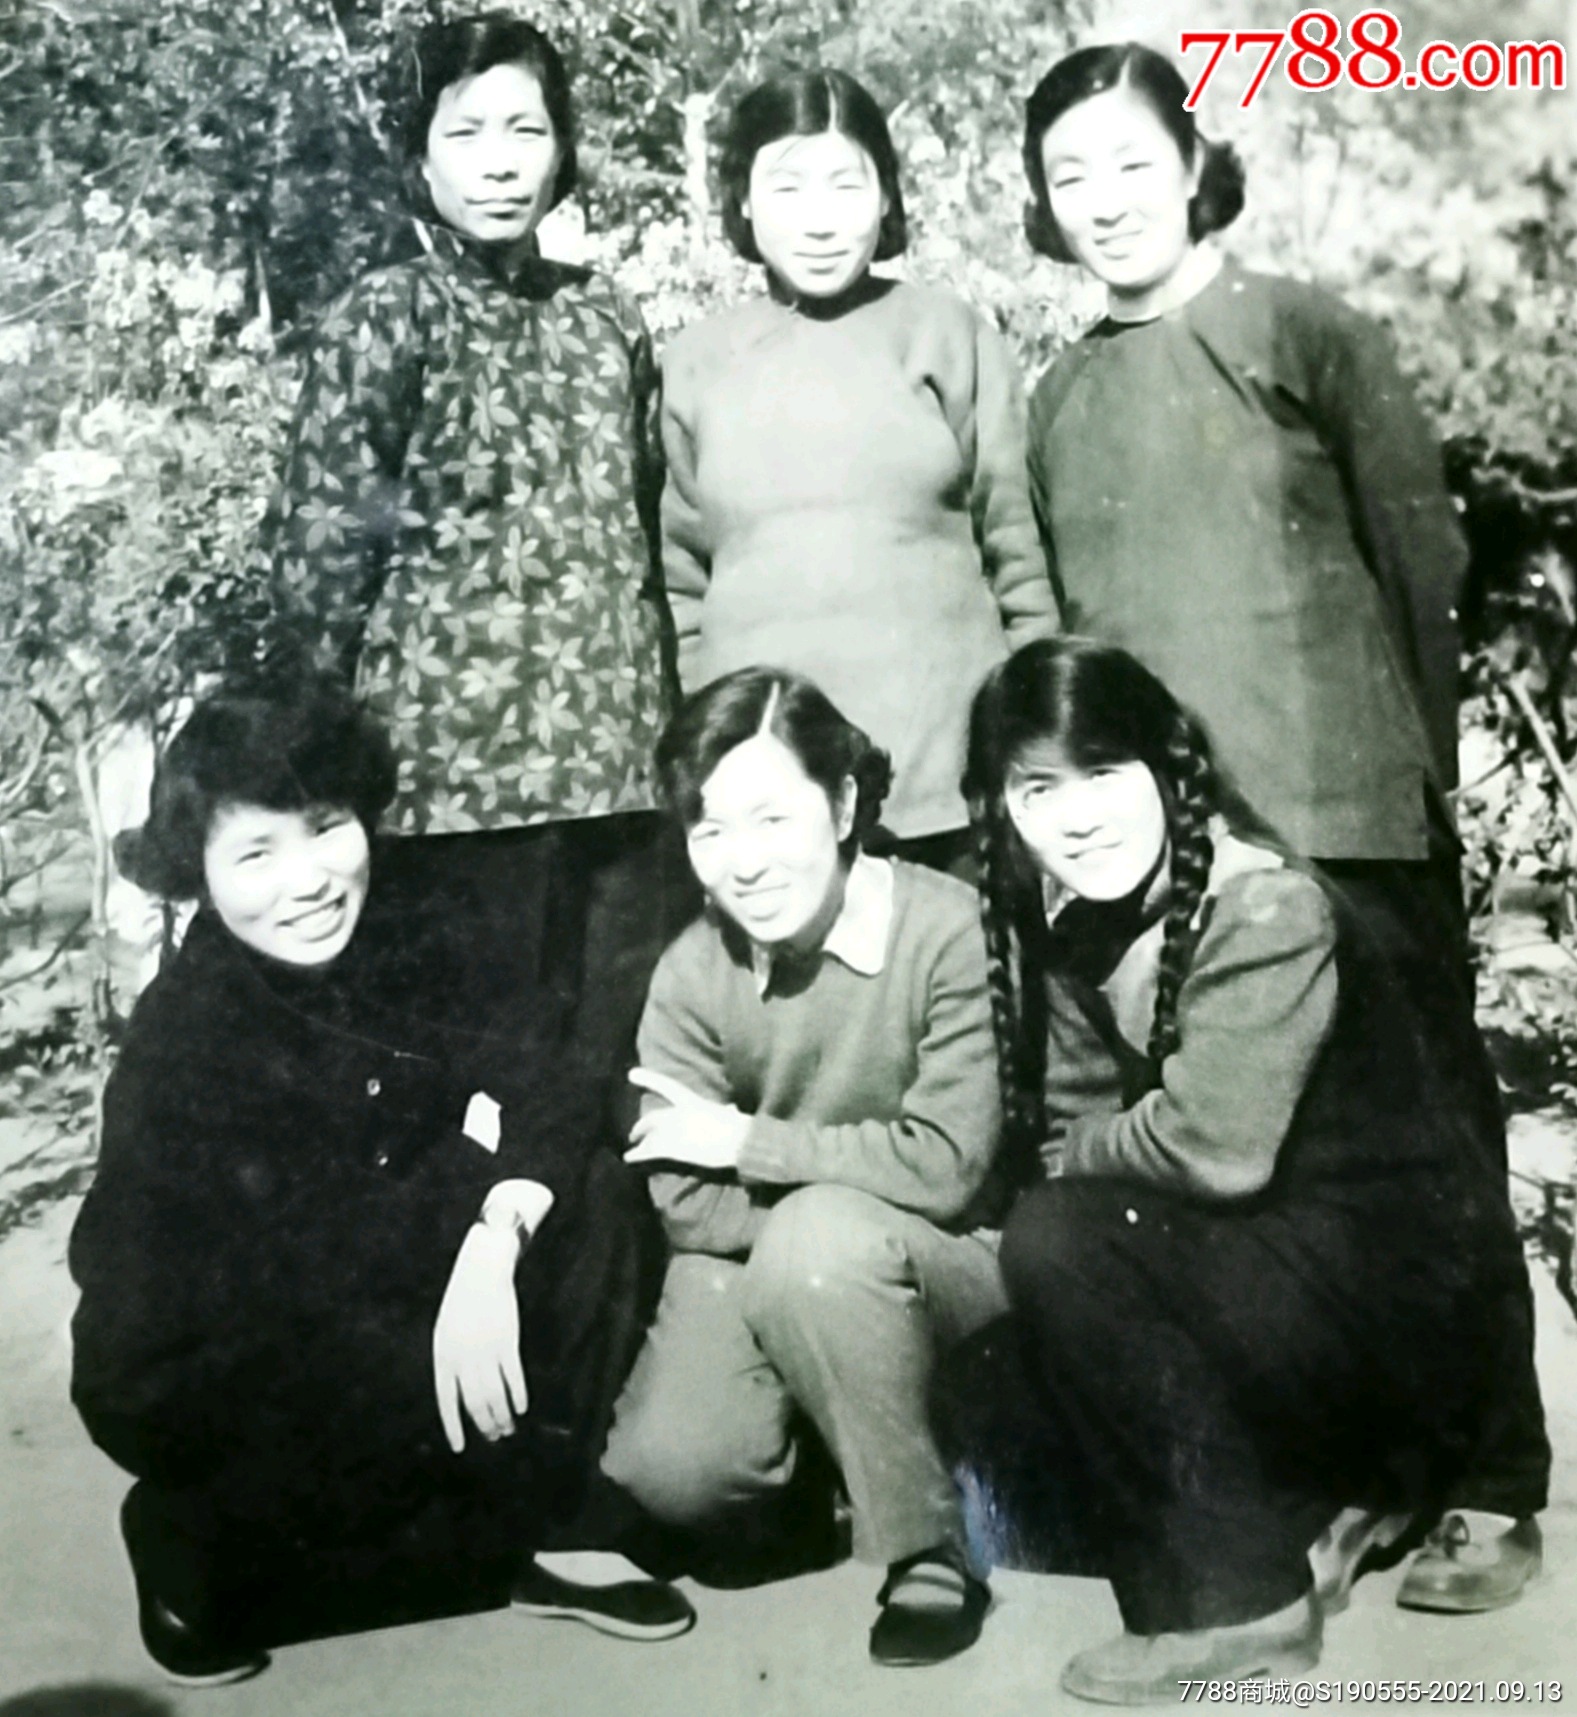 50年代穿花衣长辫子的6位美女合影老照片